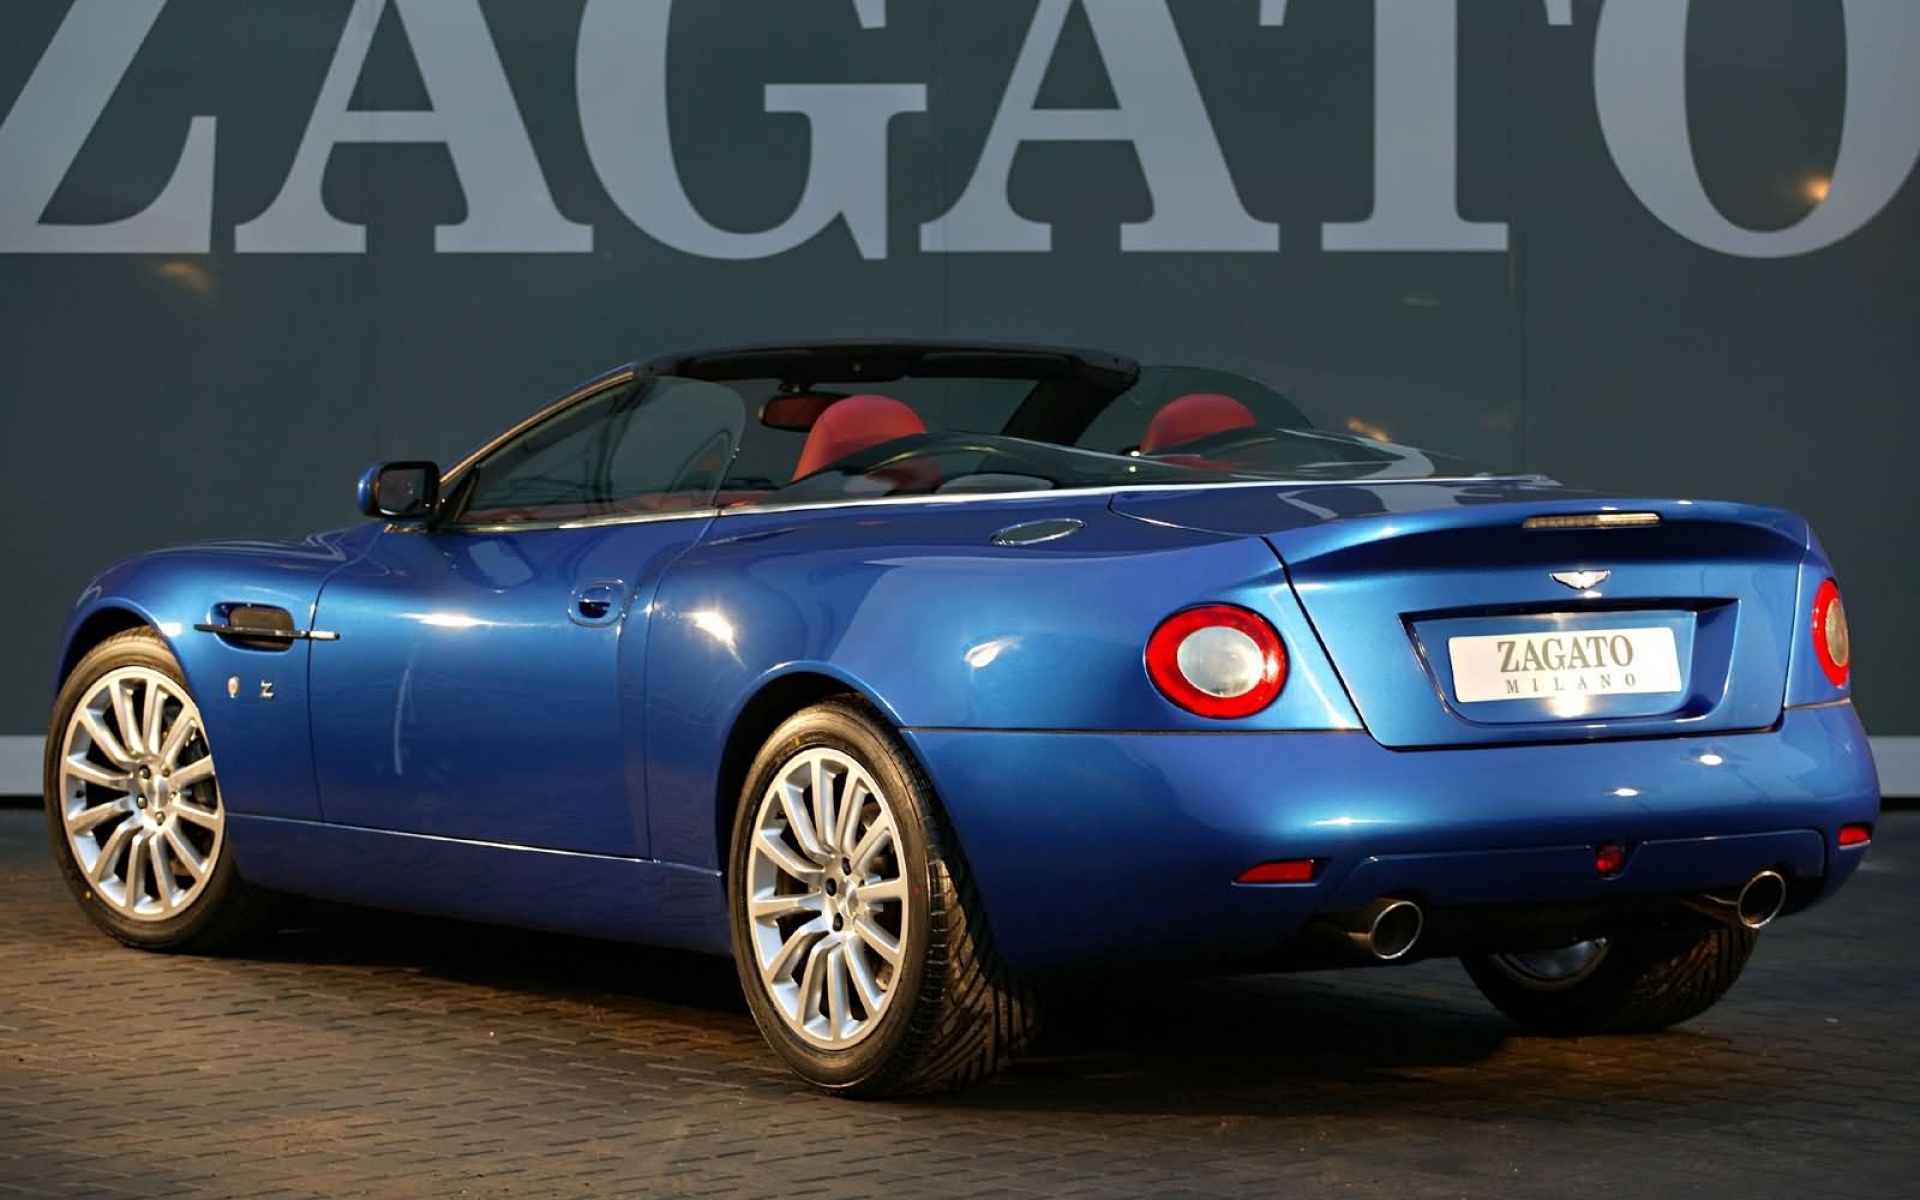 Картинки Aston martin, v12, побеждает, 2004, синий, вид сбоку, кабриолет, авто фото и обои на рабочий стол